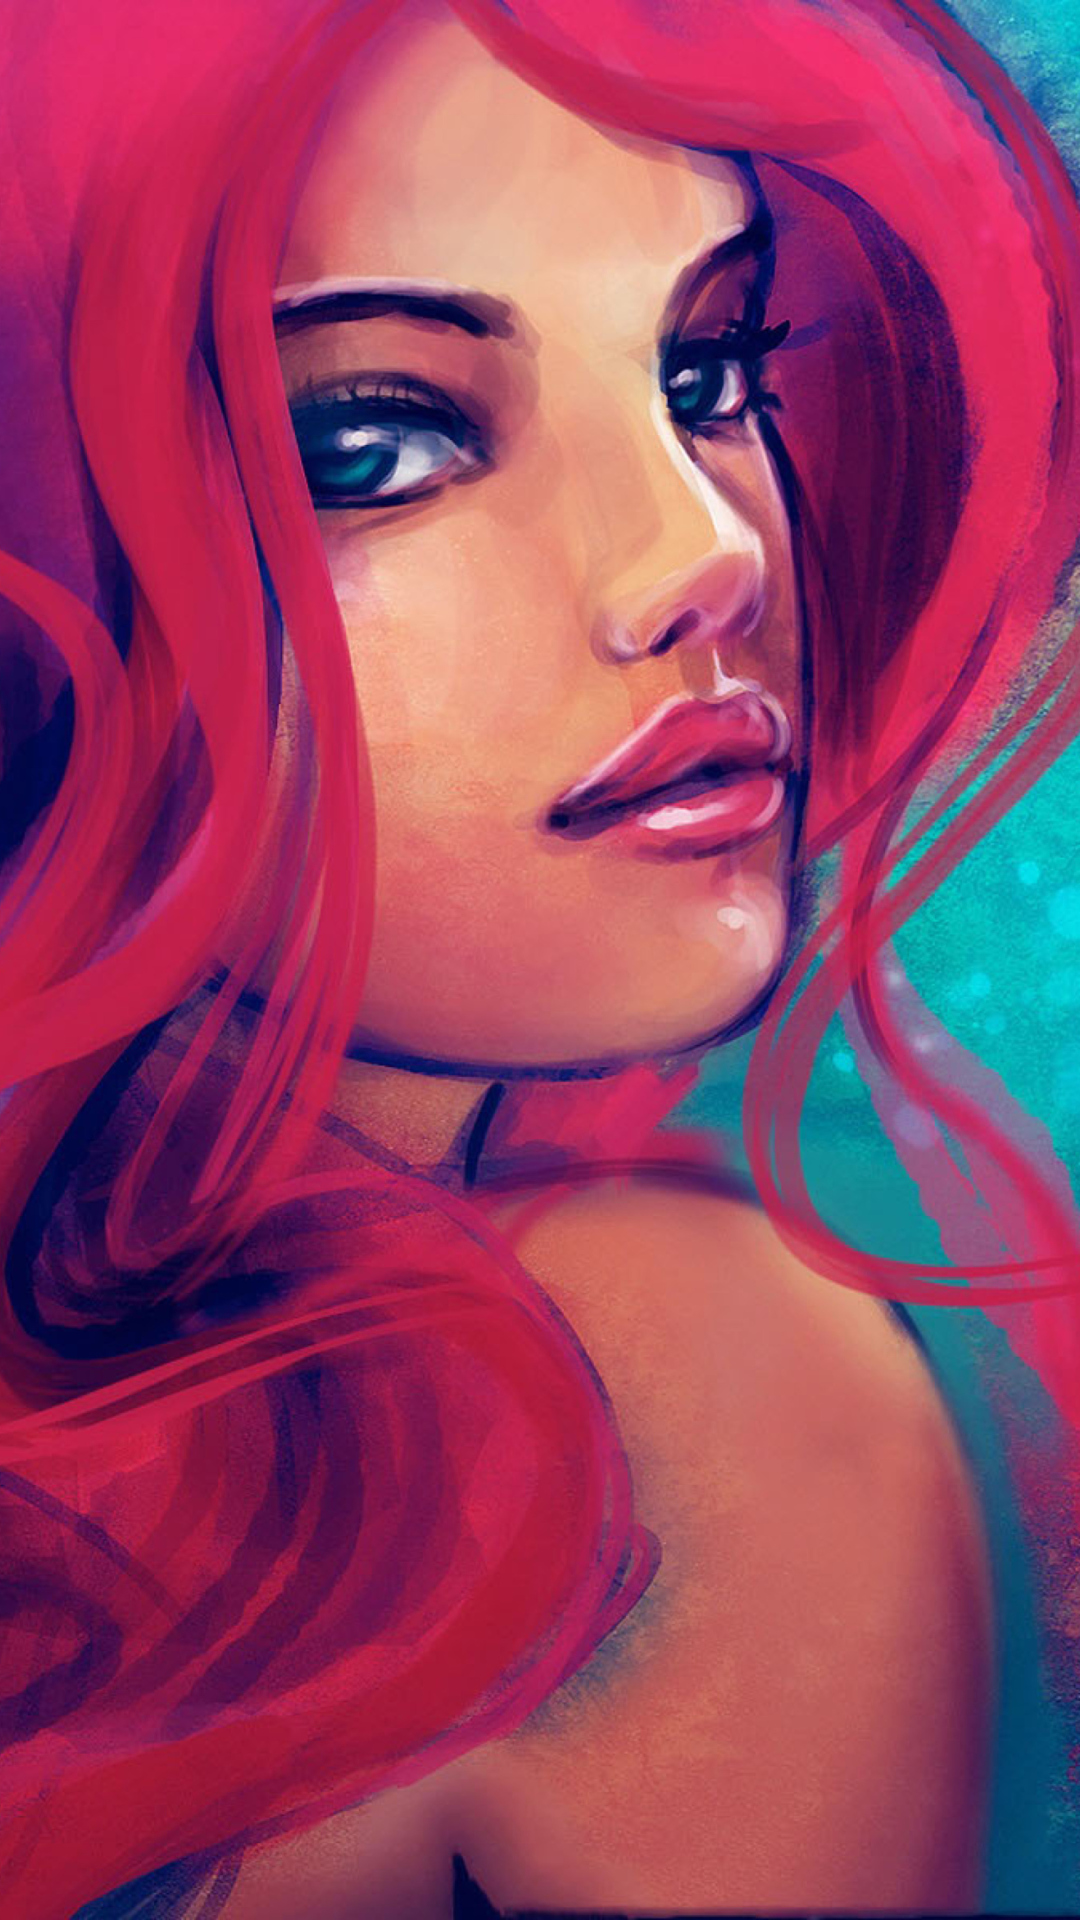 Обои Redhead Girl Painting 1080x1920